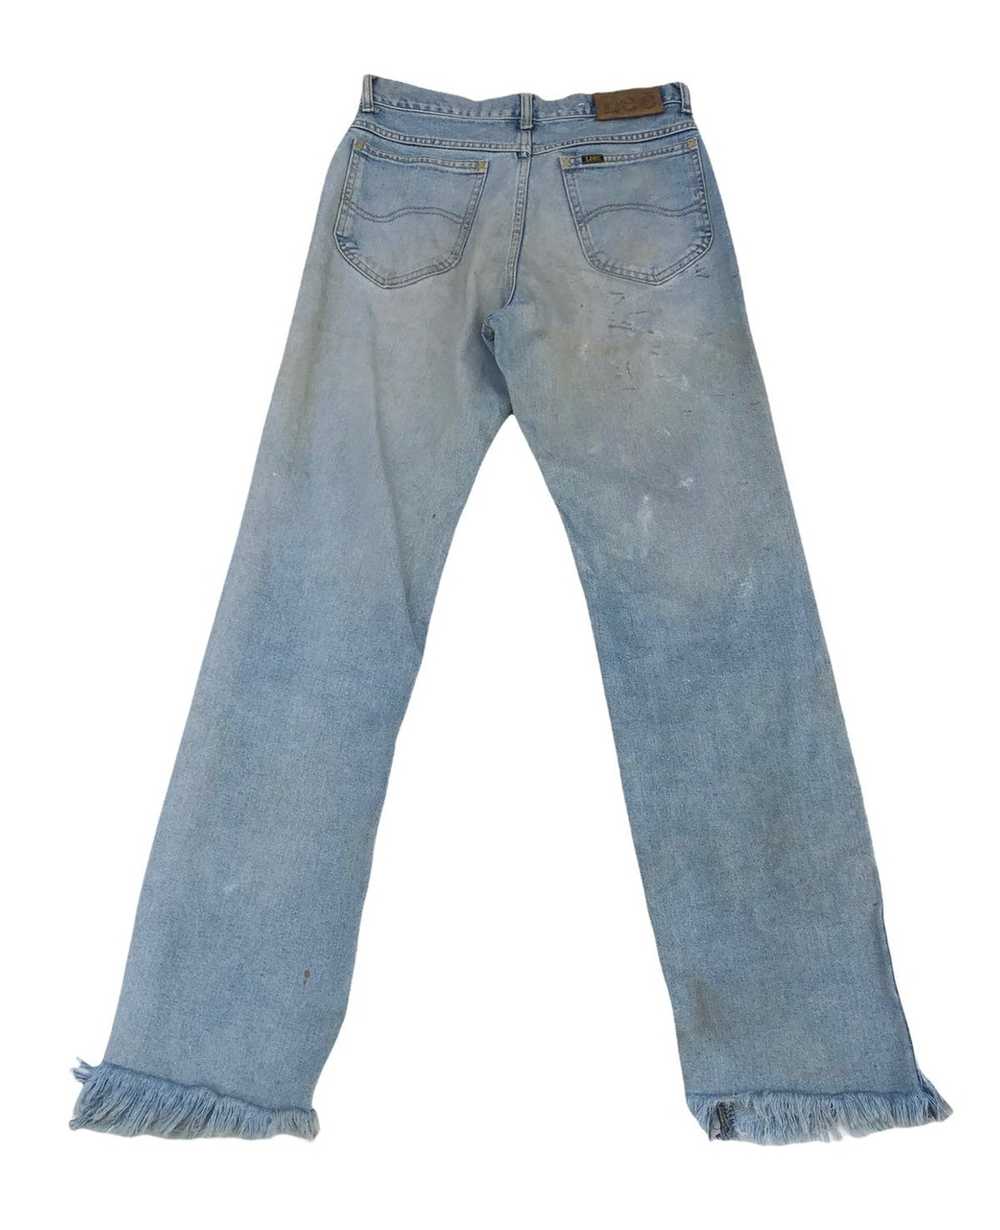 Japanese Brand × Lee Vintage Lee Distressed Jeans - image 2